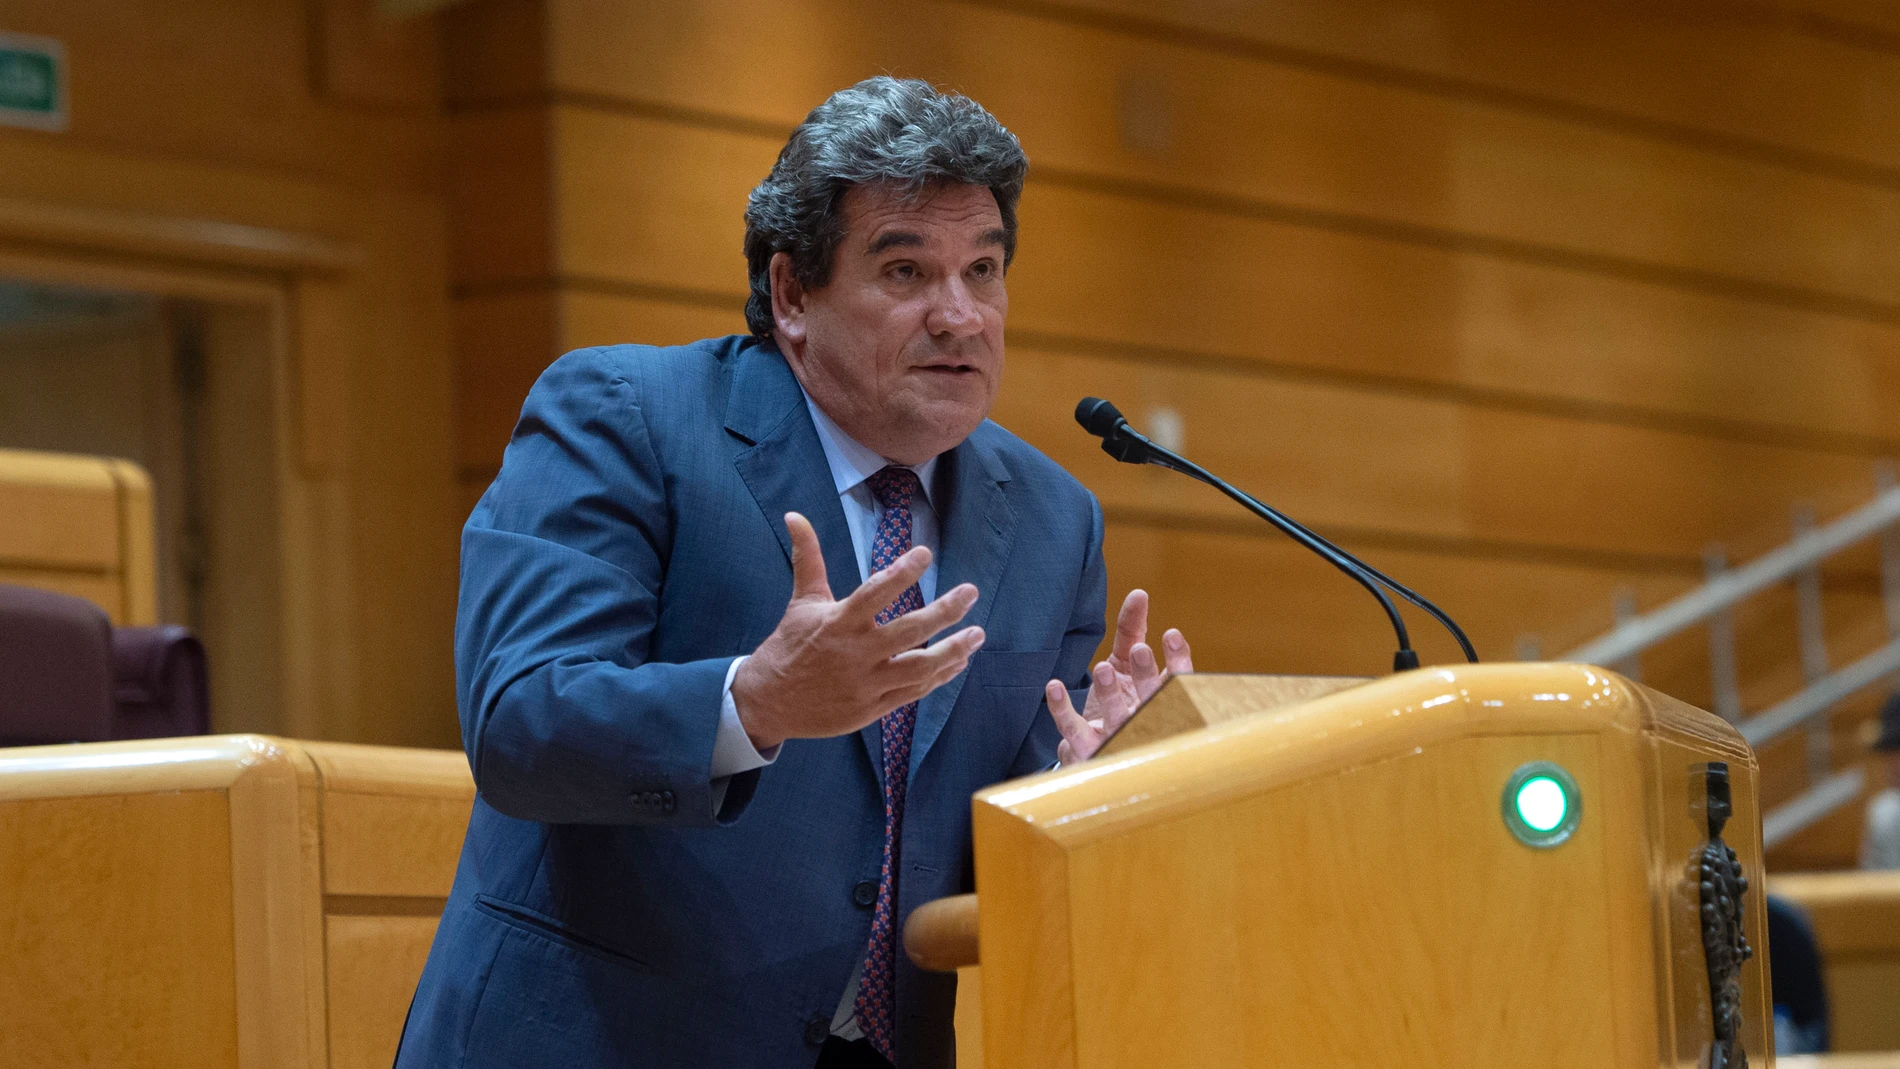 El ministro de Inclusión, Seguridad Social y Migraciones, José Luis Escrivá, interviene durante una sesión de control al Gobierno en el Senado